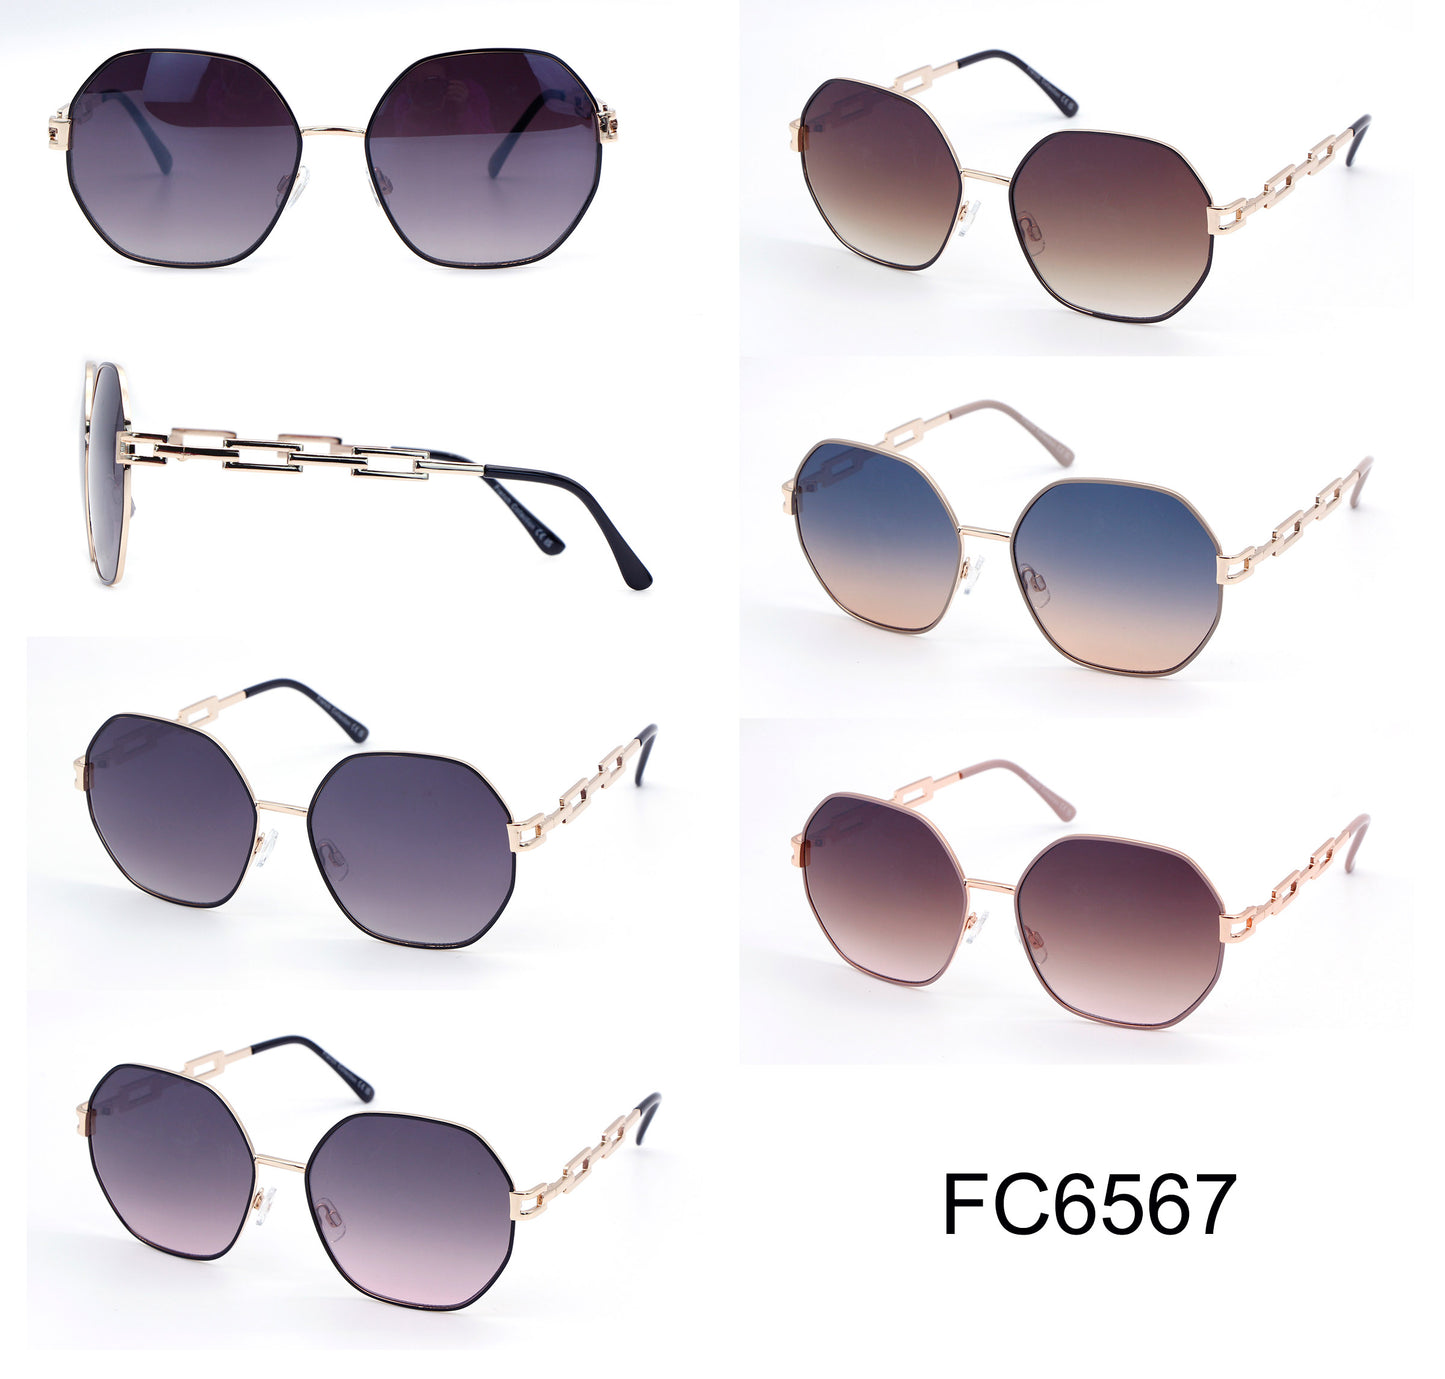 FC 6567 - Fashion Metal Hexagon Sunglasses